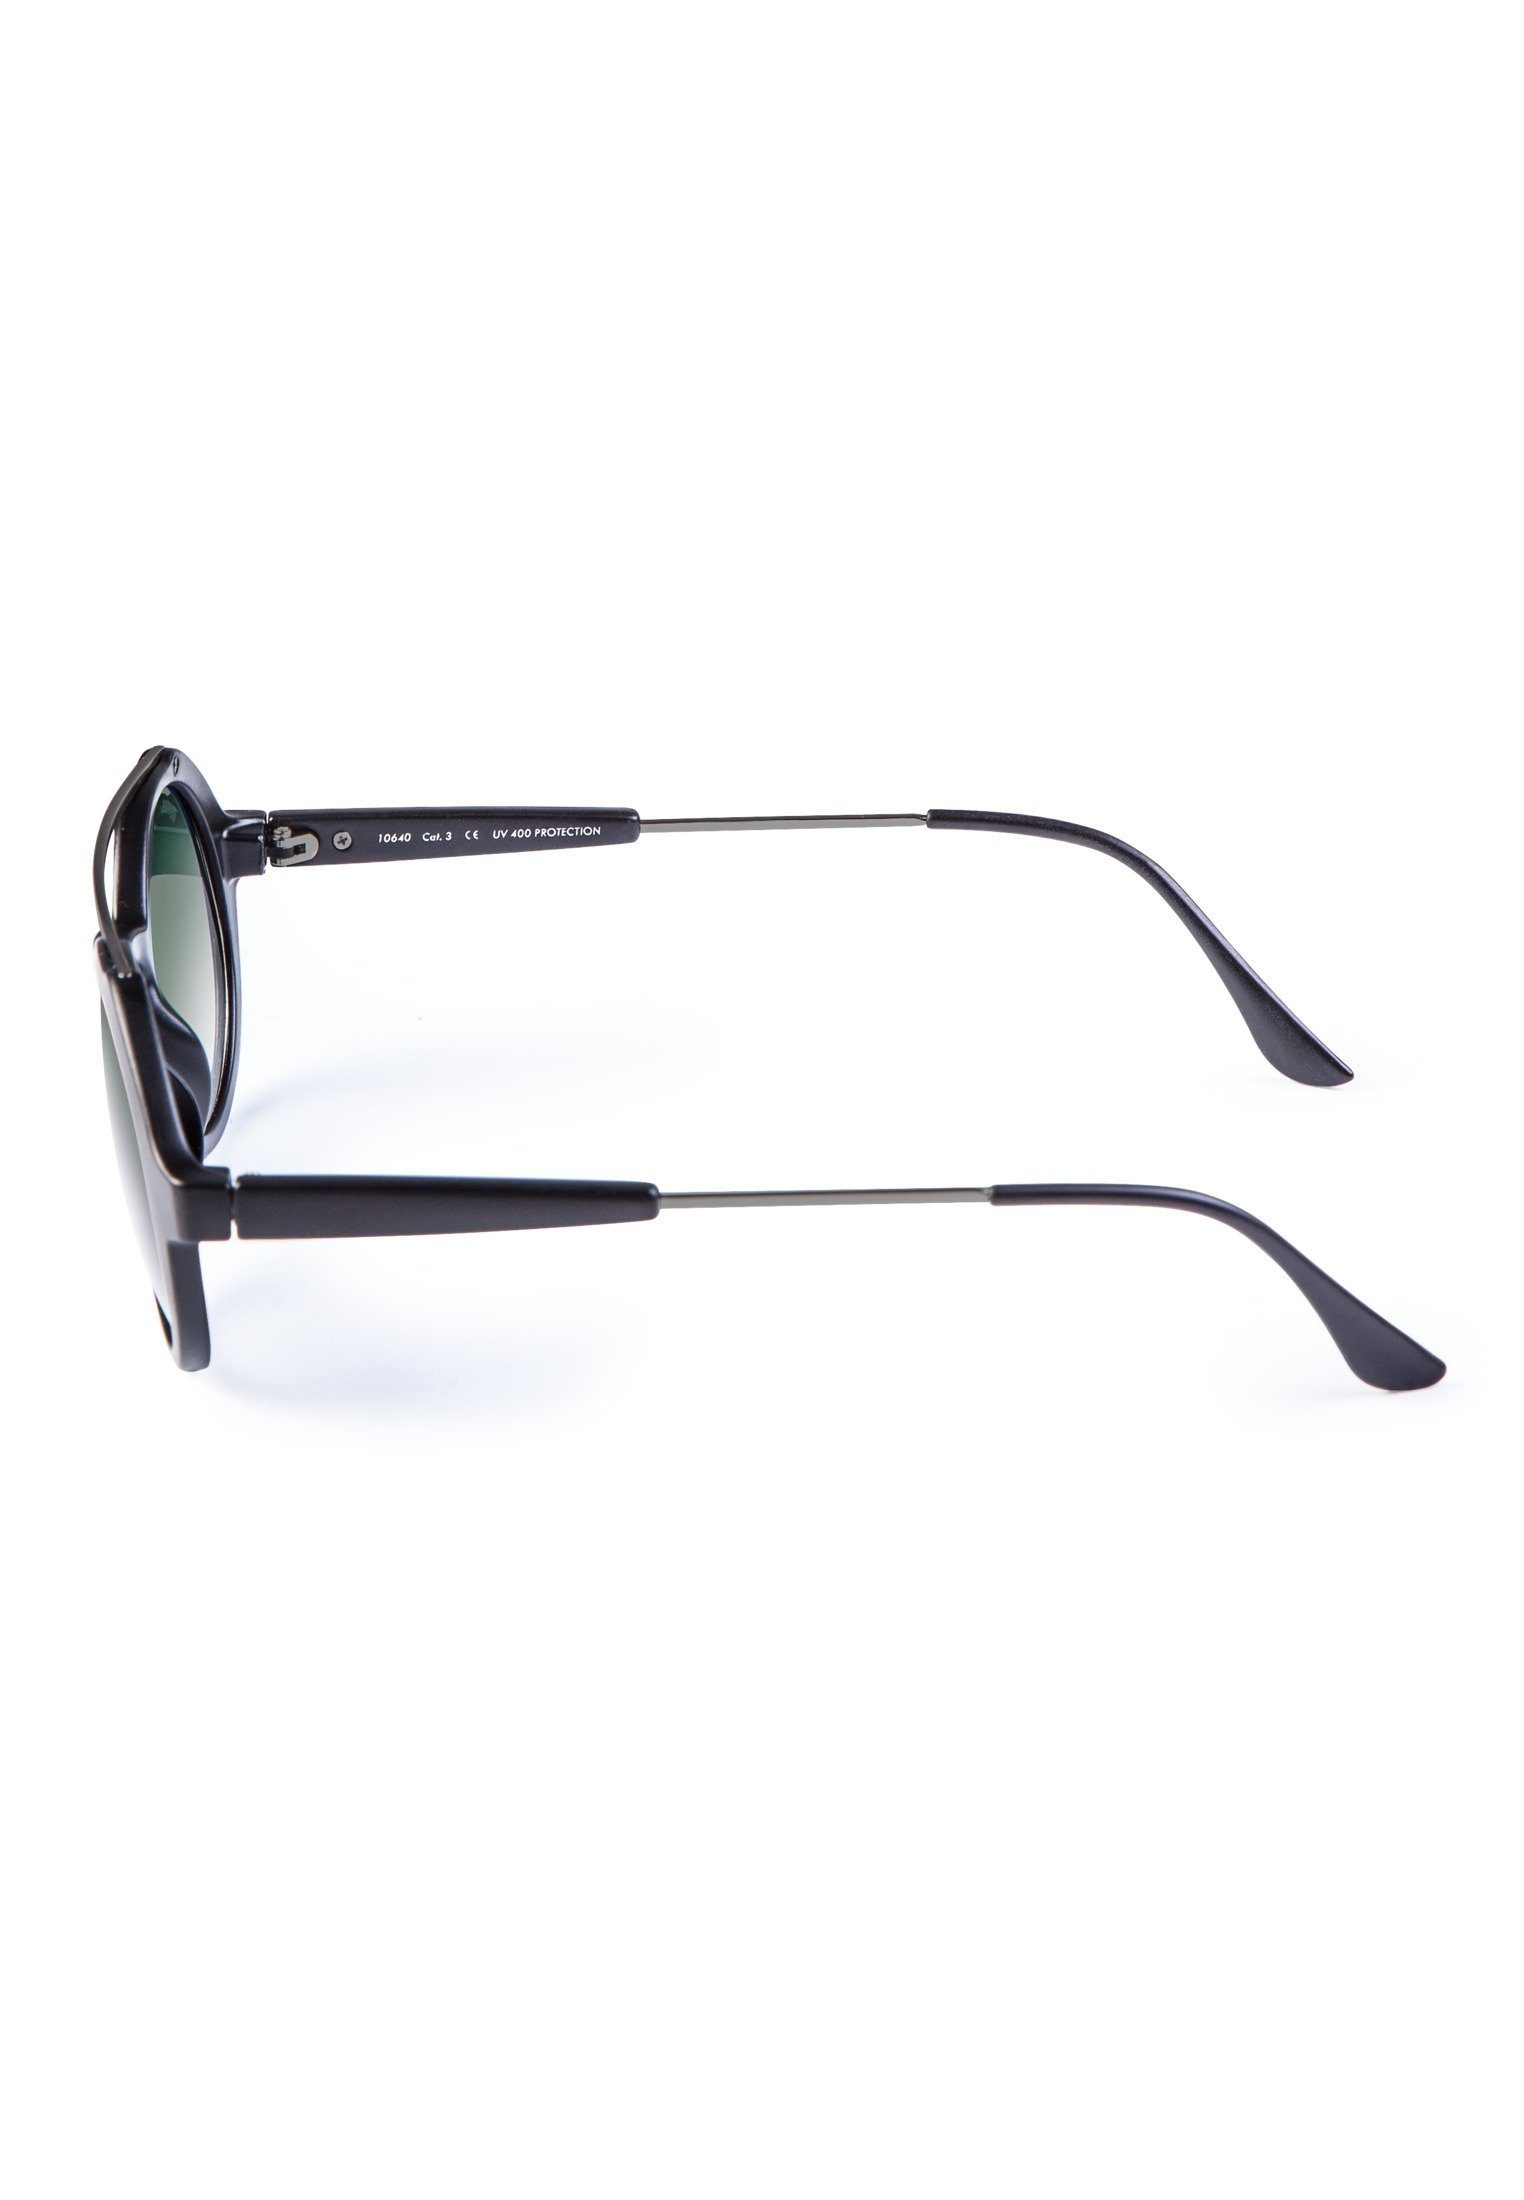 MSTRDS Sonnenbrille Accessoires Sunglasses Retro Space blk/grn